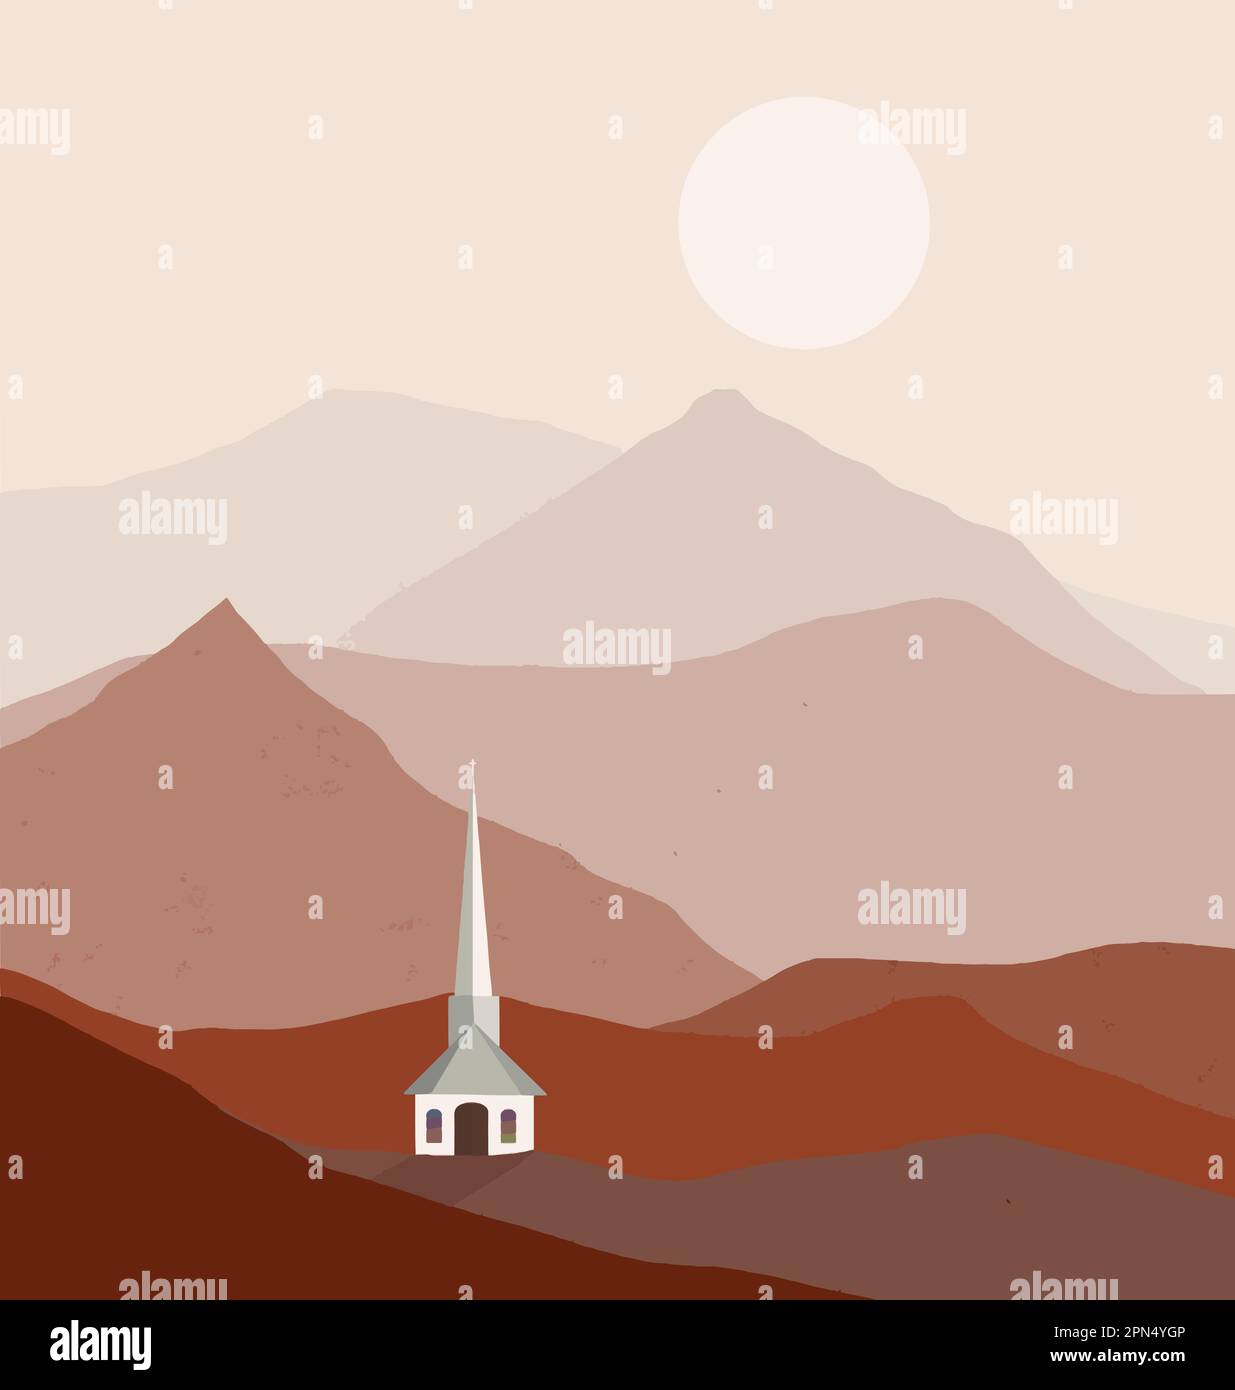 Une petite église blanche est vue une vallée de montagne dans une image vectorielle. Illustration de Vecteur